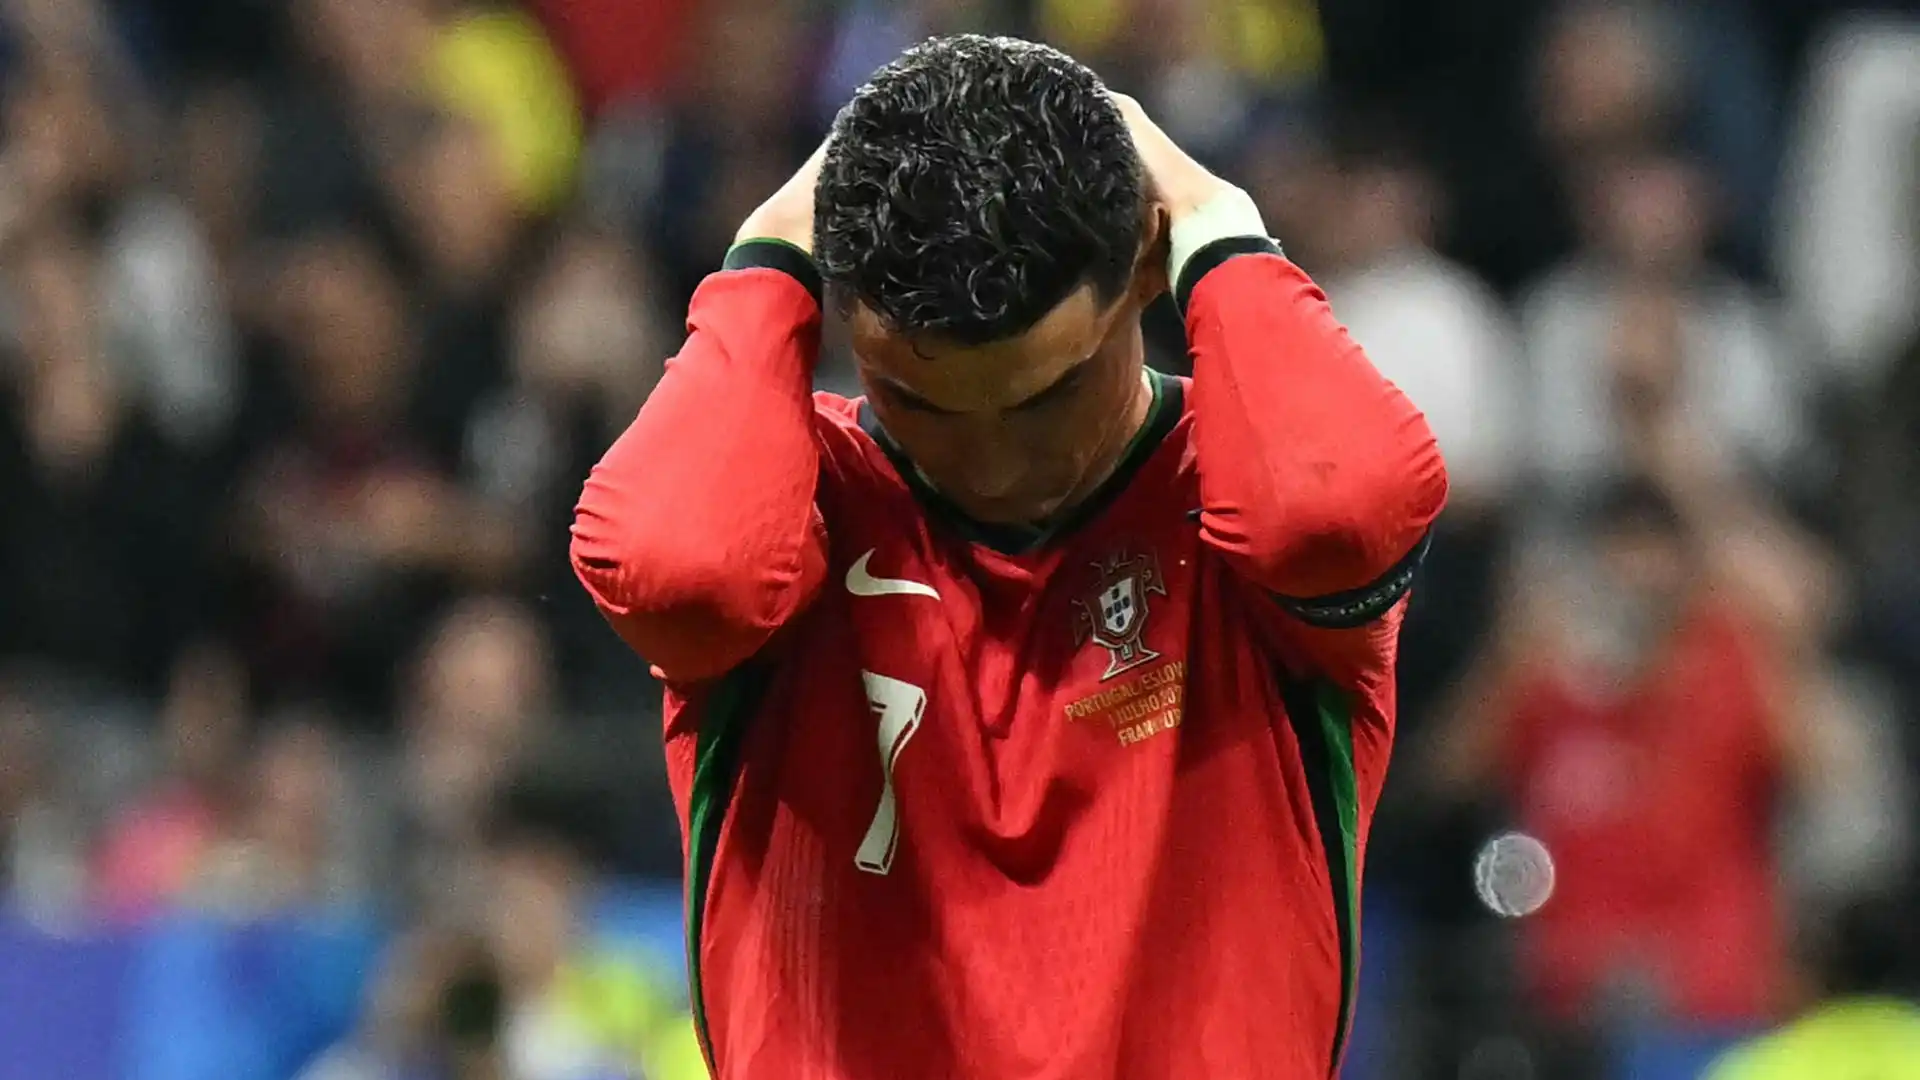 Fino a quel momento Ronaldo aveva deluso, sbagliando diverse occasioni da gol